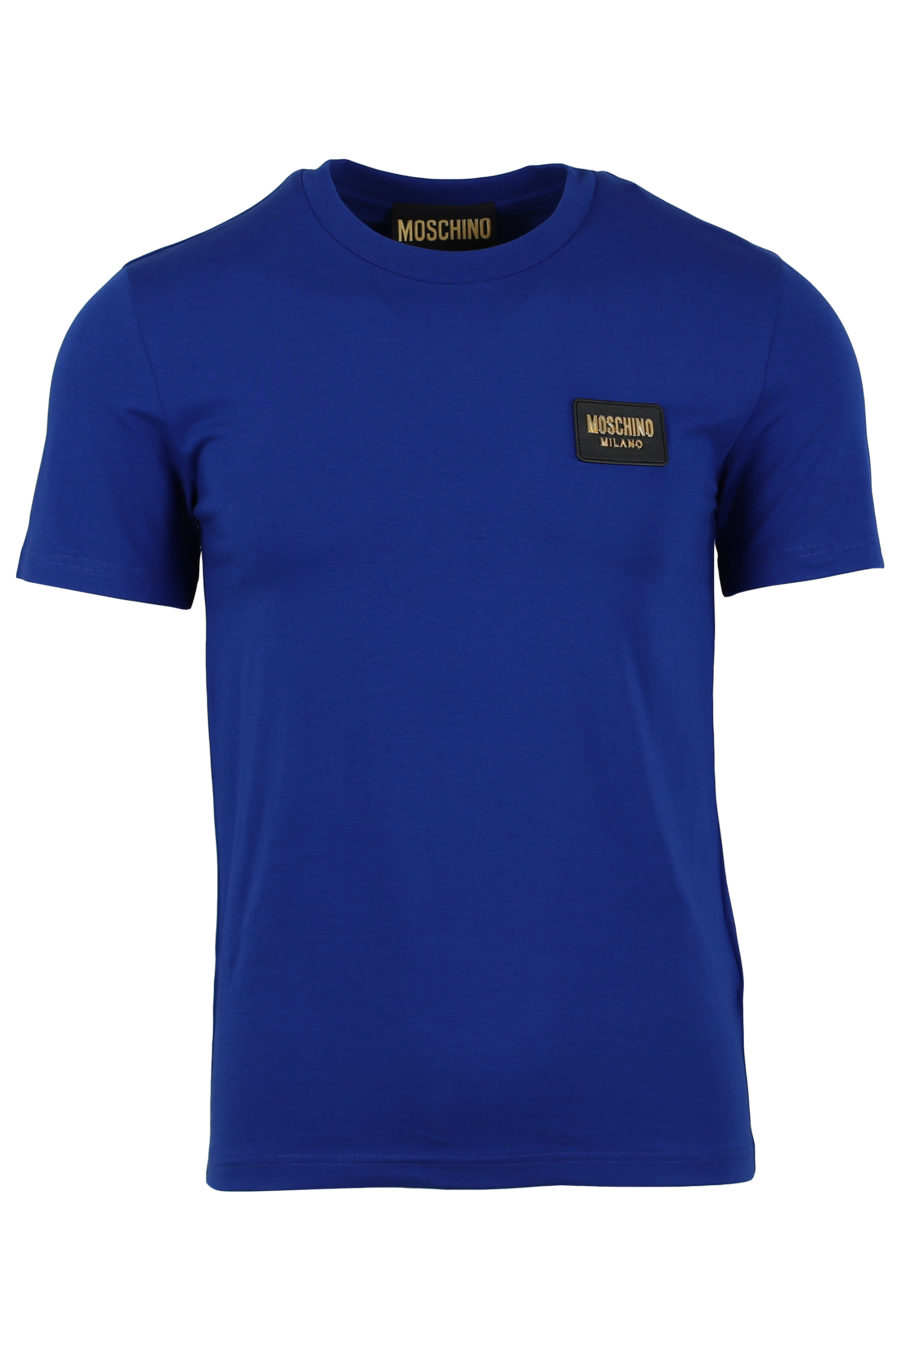 T-Shirt mit blauem Logo in Goldfarbe - IMG 0925